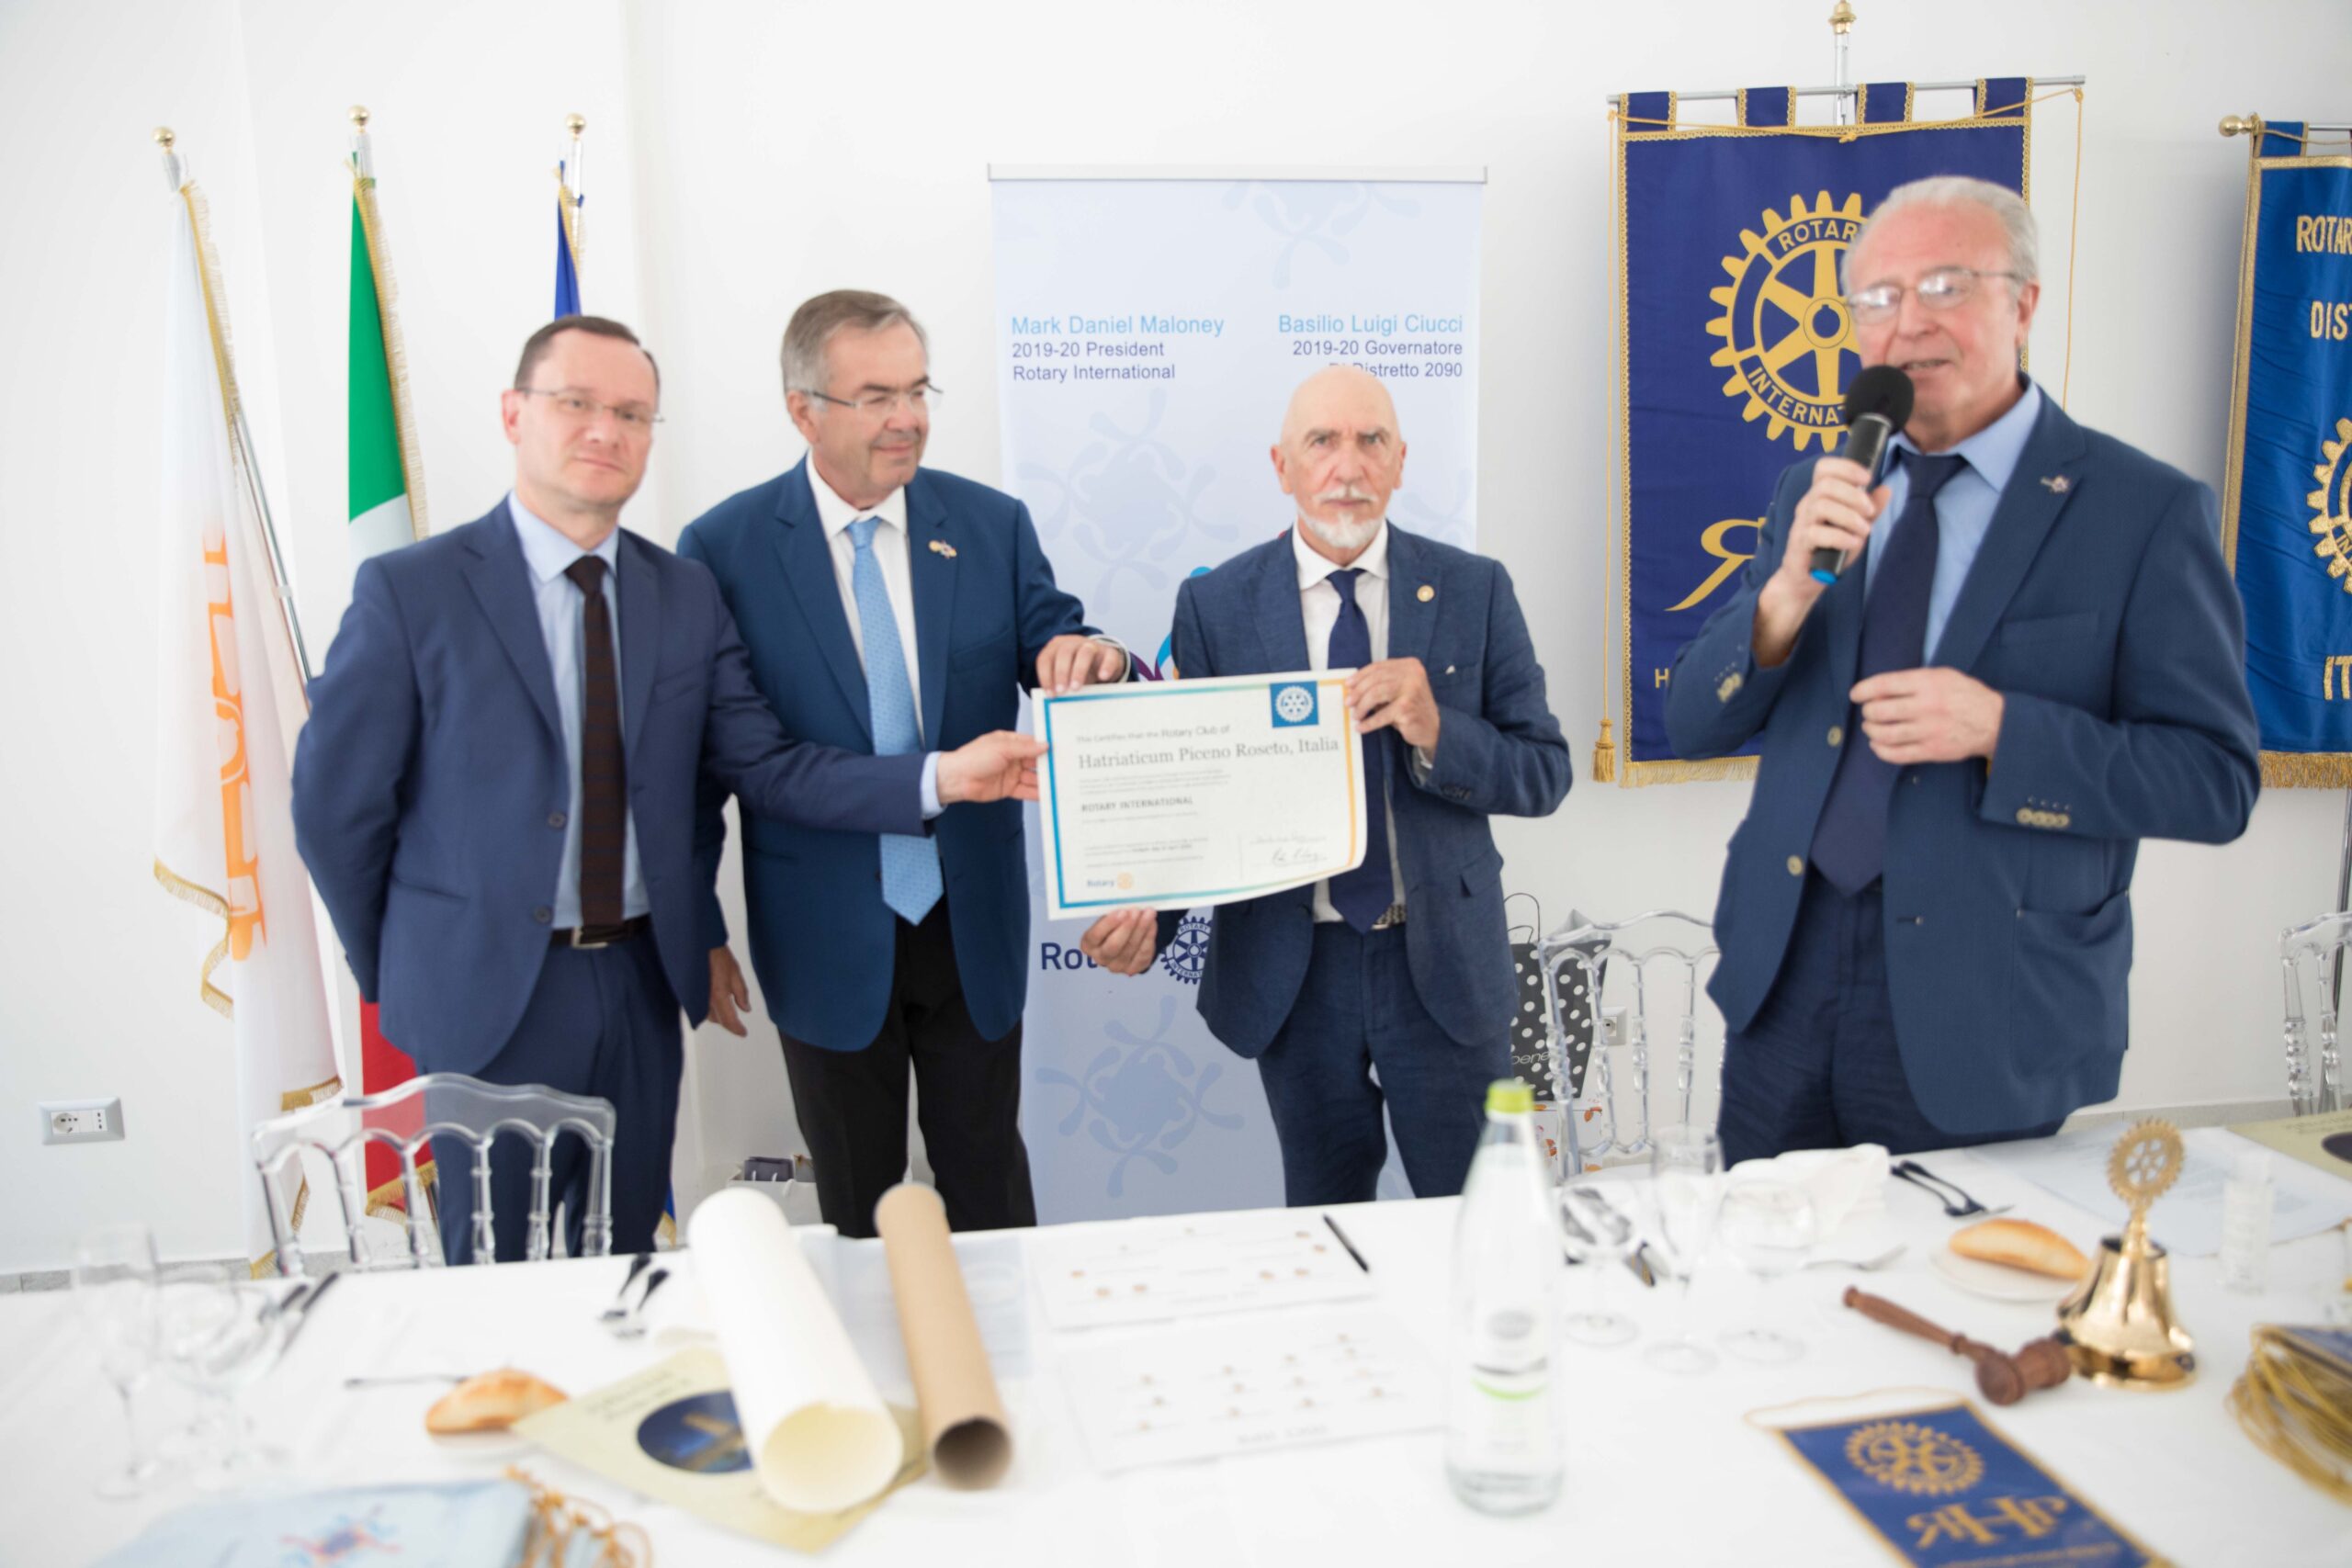 Consegnata la “charter” costitutiva  del nuovo “Rotary Club Hatriaticum Piceno Roseto”